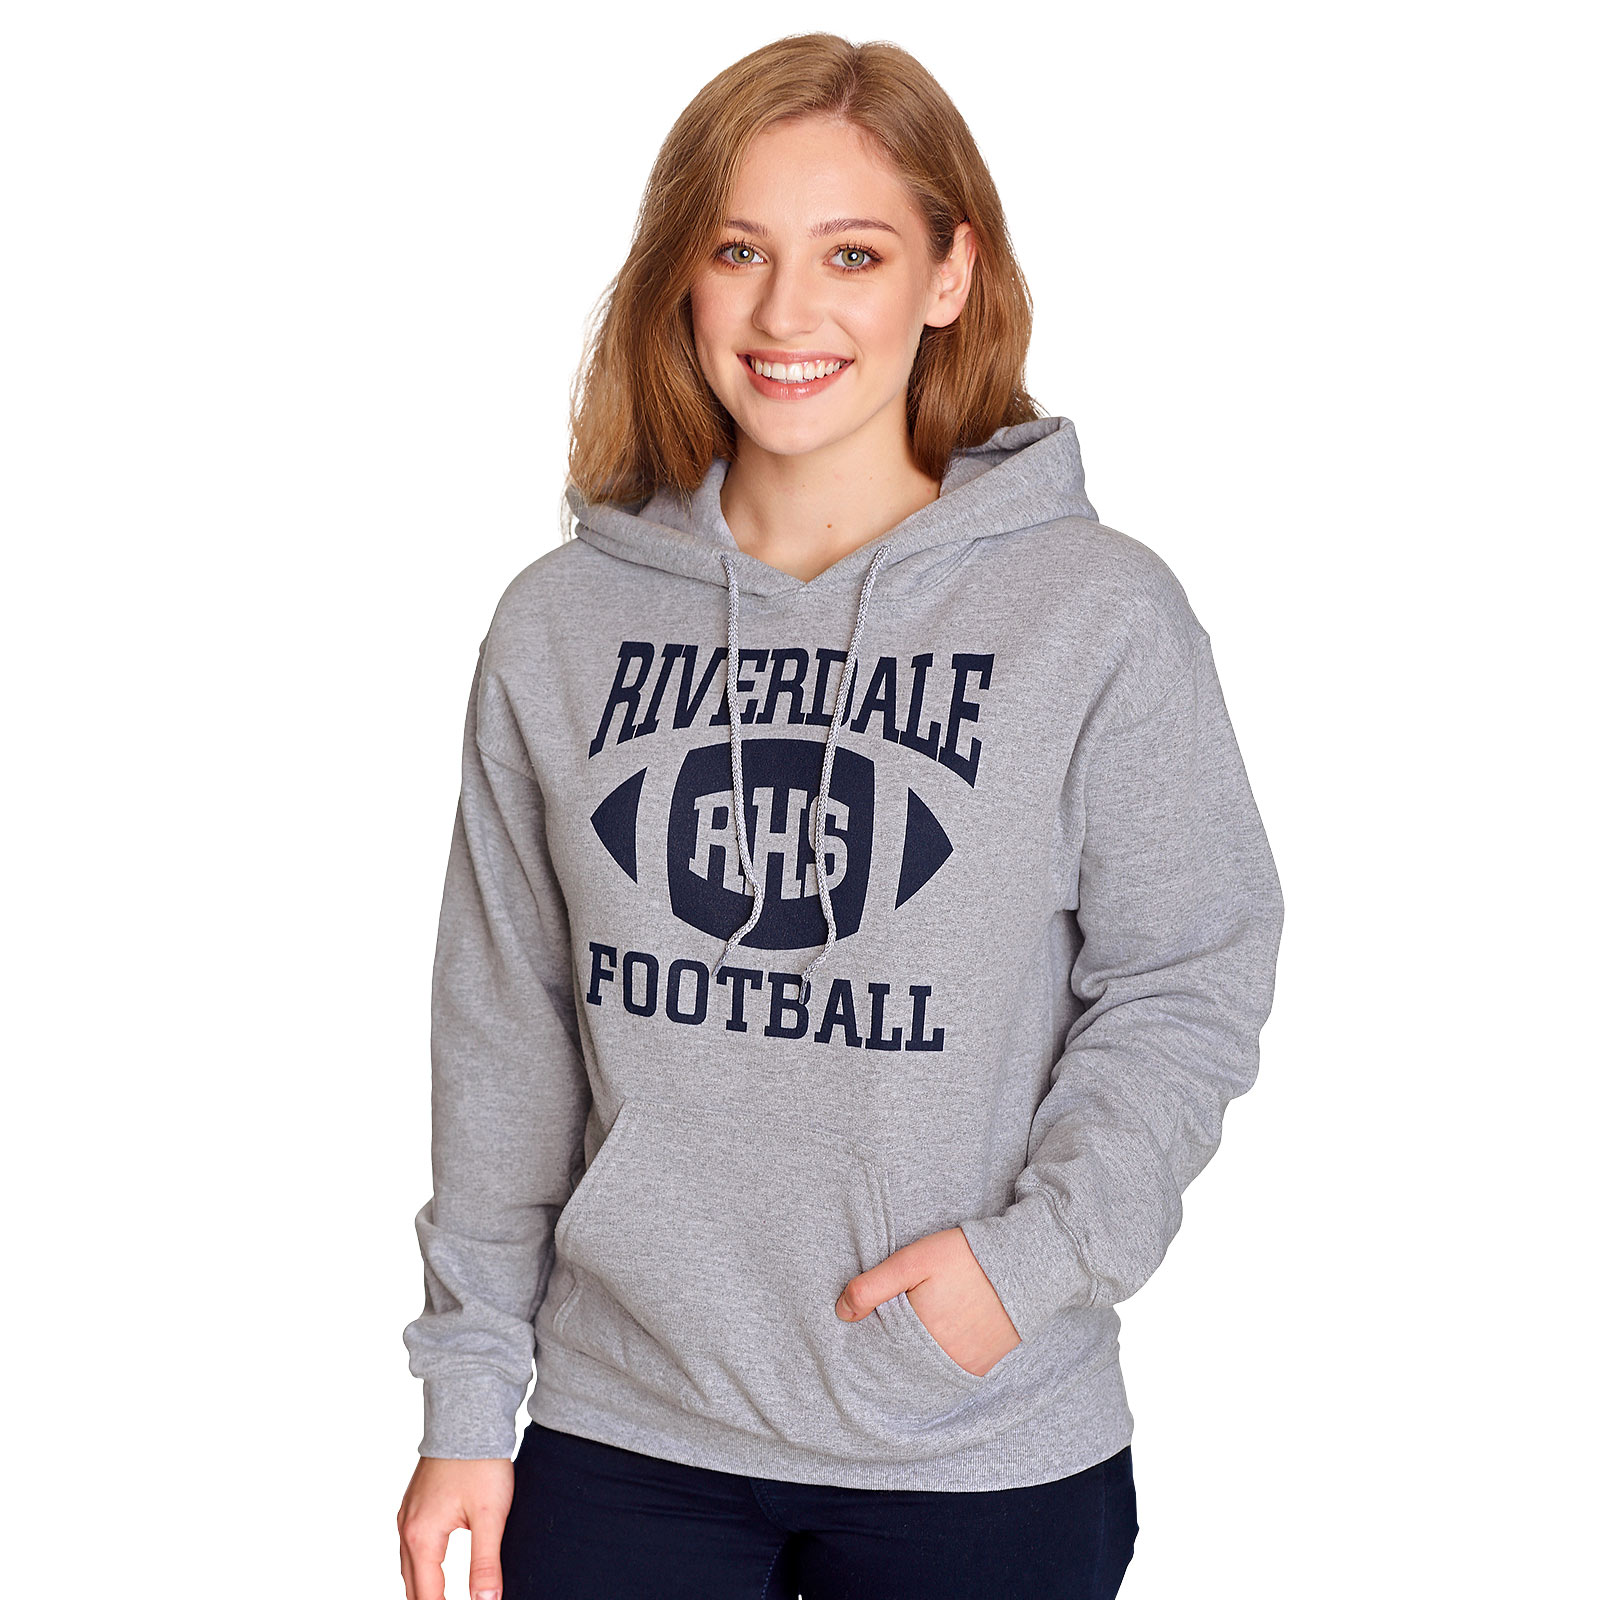 Riverdale - RHS Football Team Hoodie Grijs